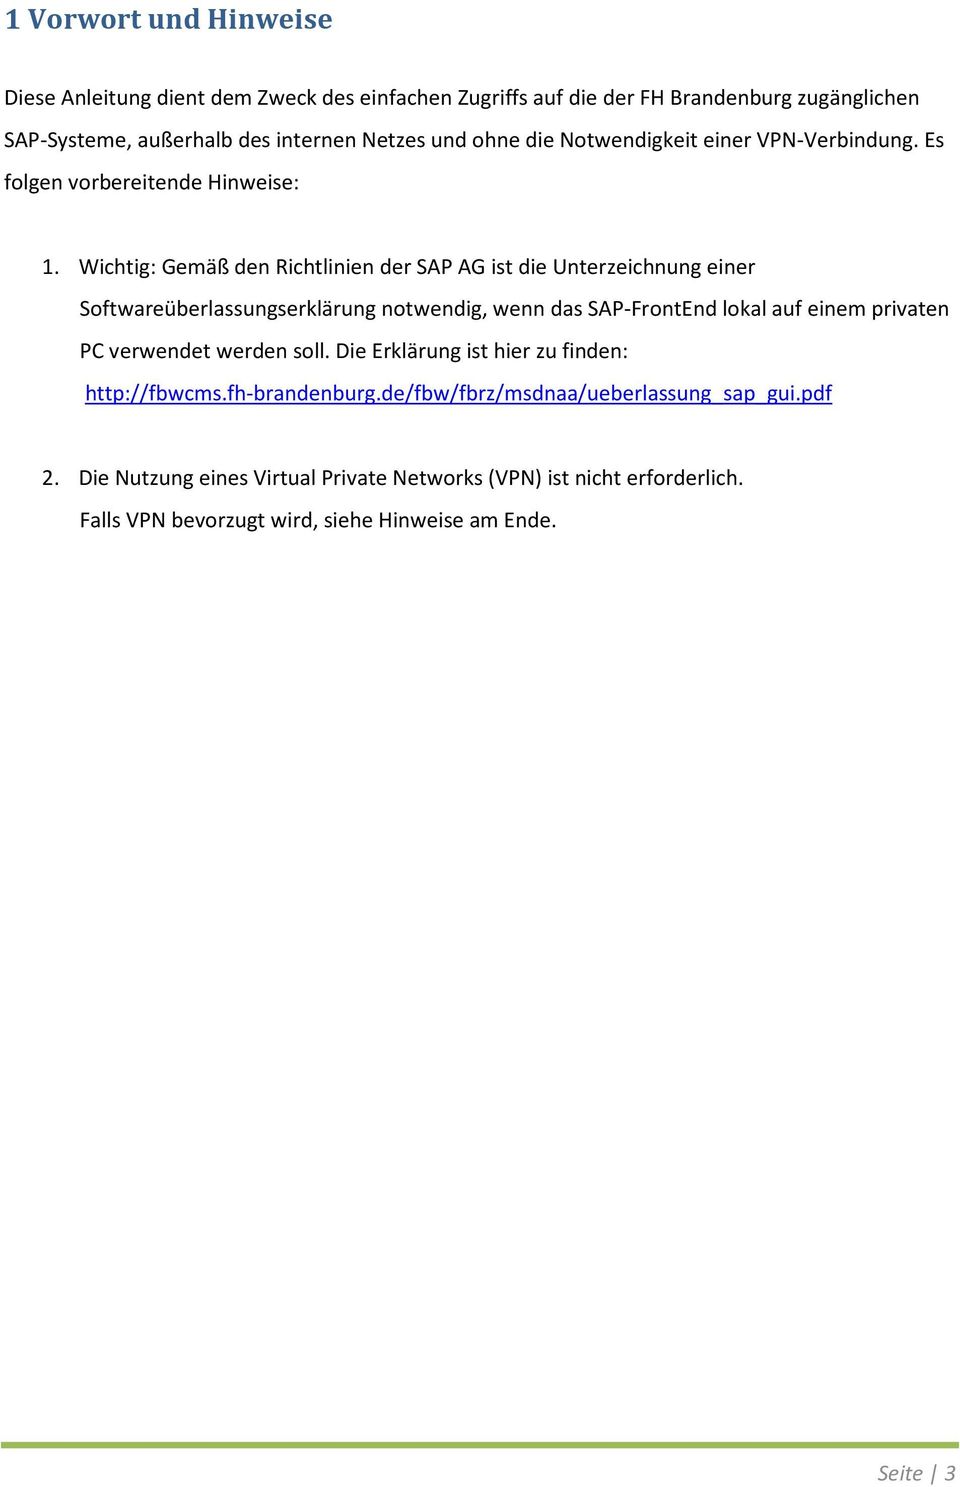 Wichtig: Gemäß den Richtlinien der SAP AG ist die Unterzeichnung einer Softwareüberlassungserklärung notwendig, wenn das SAP-FrontEnd lokal auf einem privaten PC